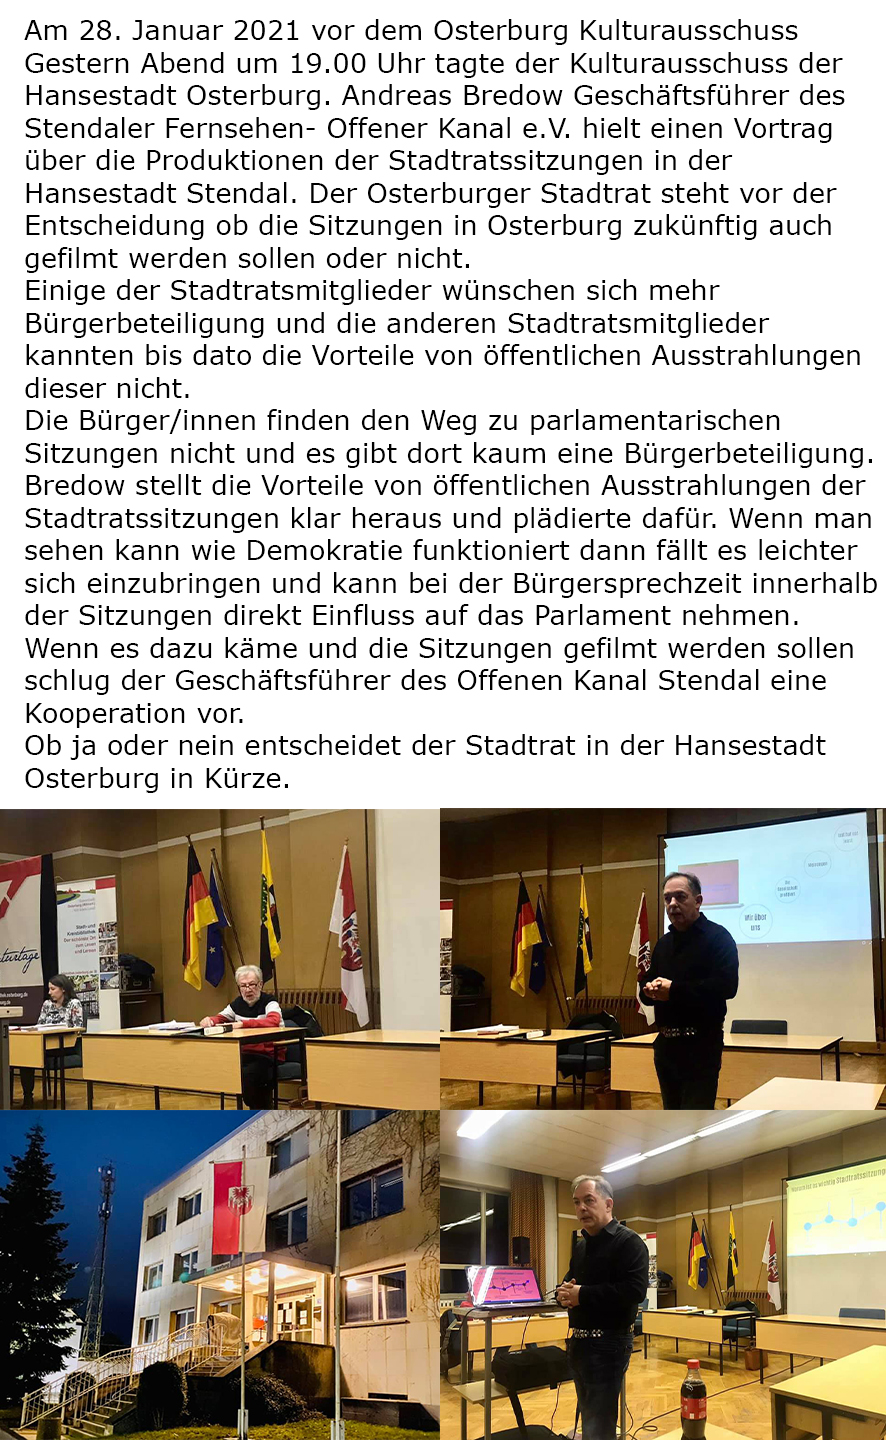 Osterburg Kulturausschuss 28.01.2021